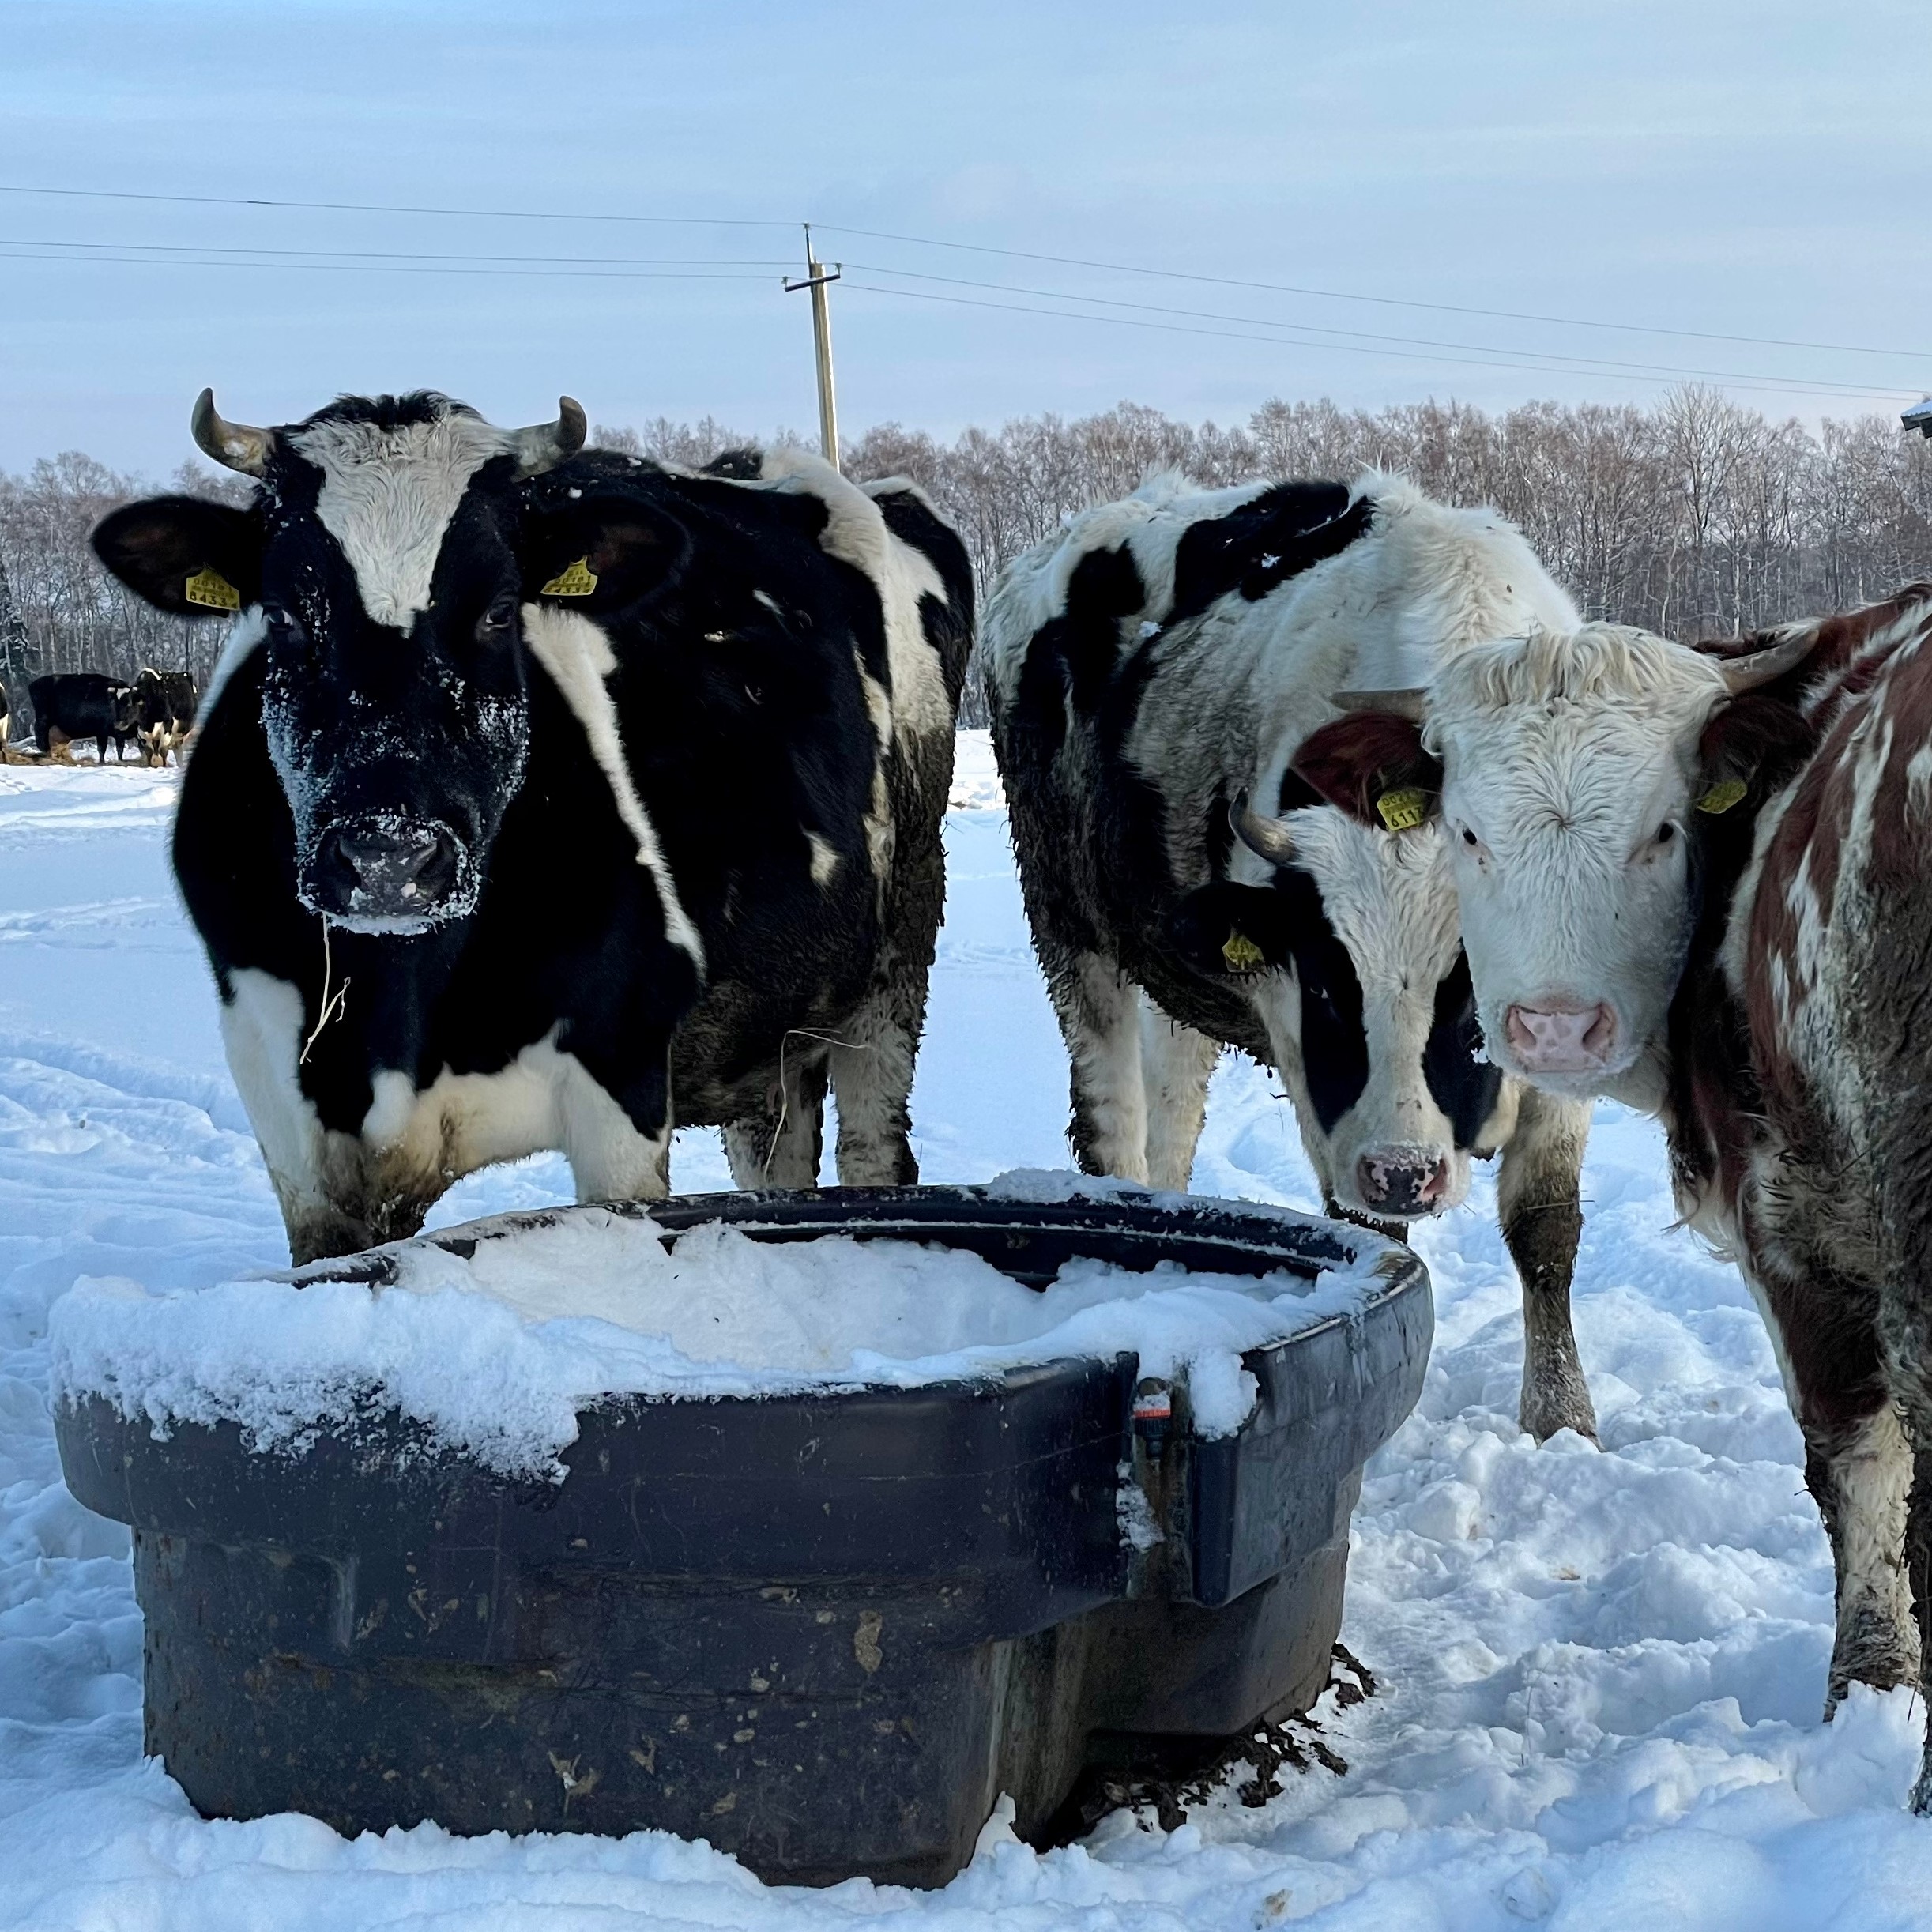 Ko utomhus på vintern